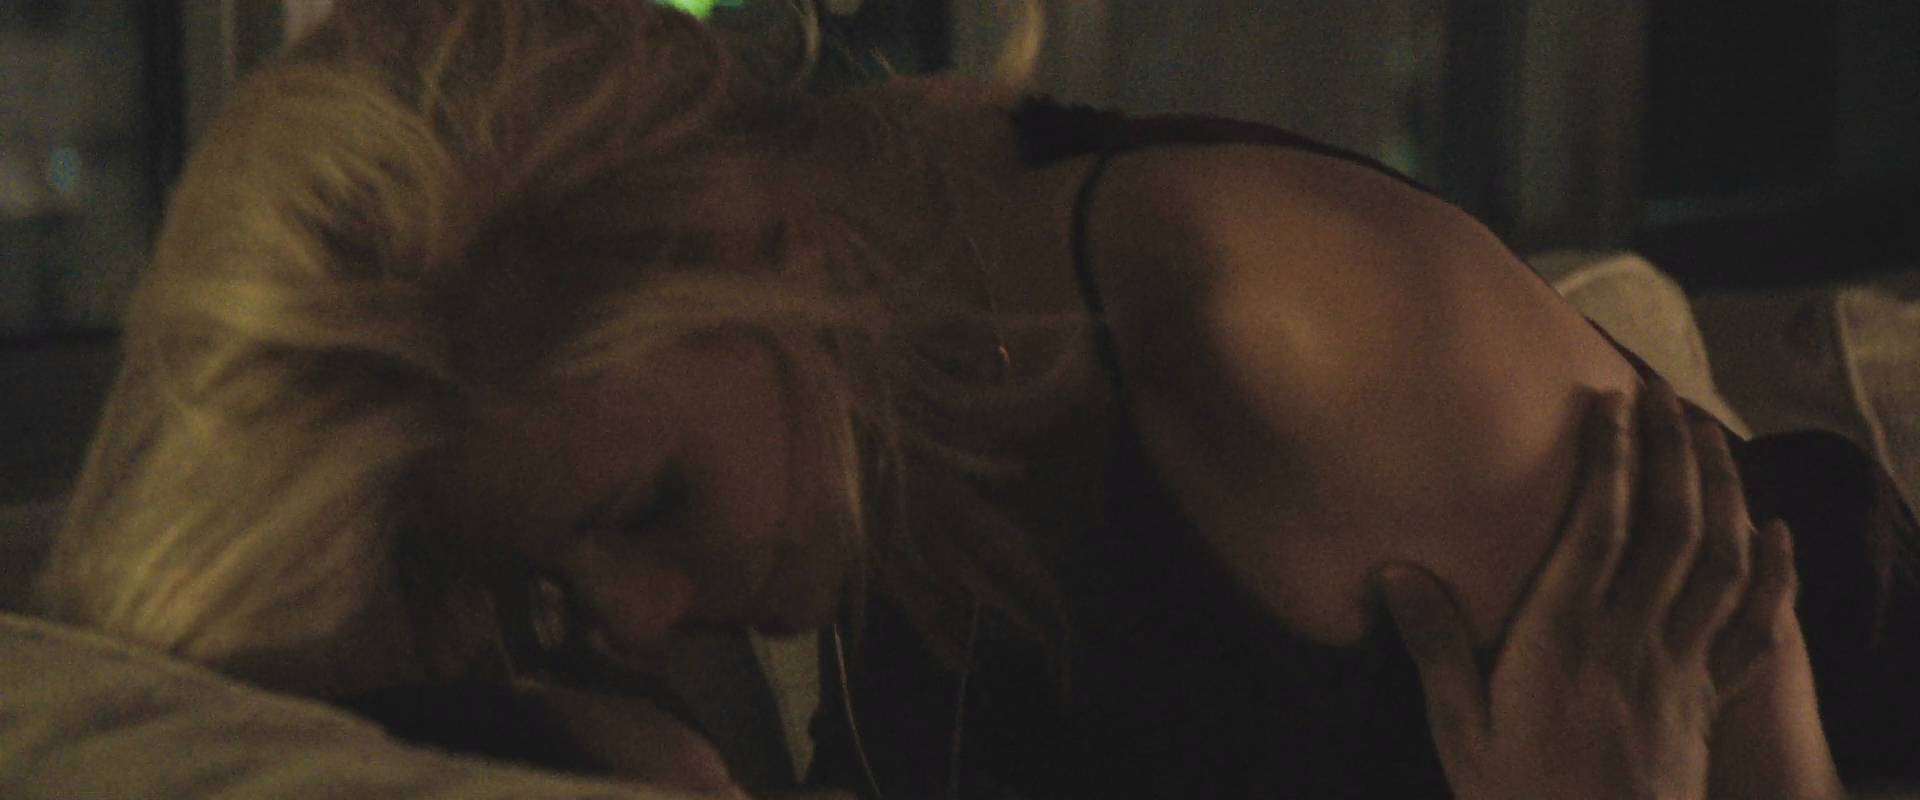 Claire Danes nude pics.